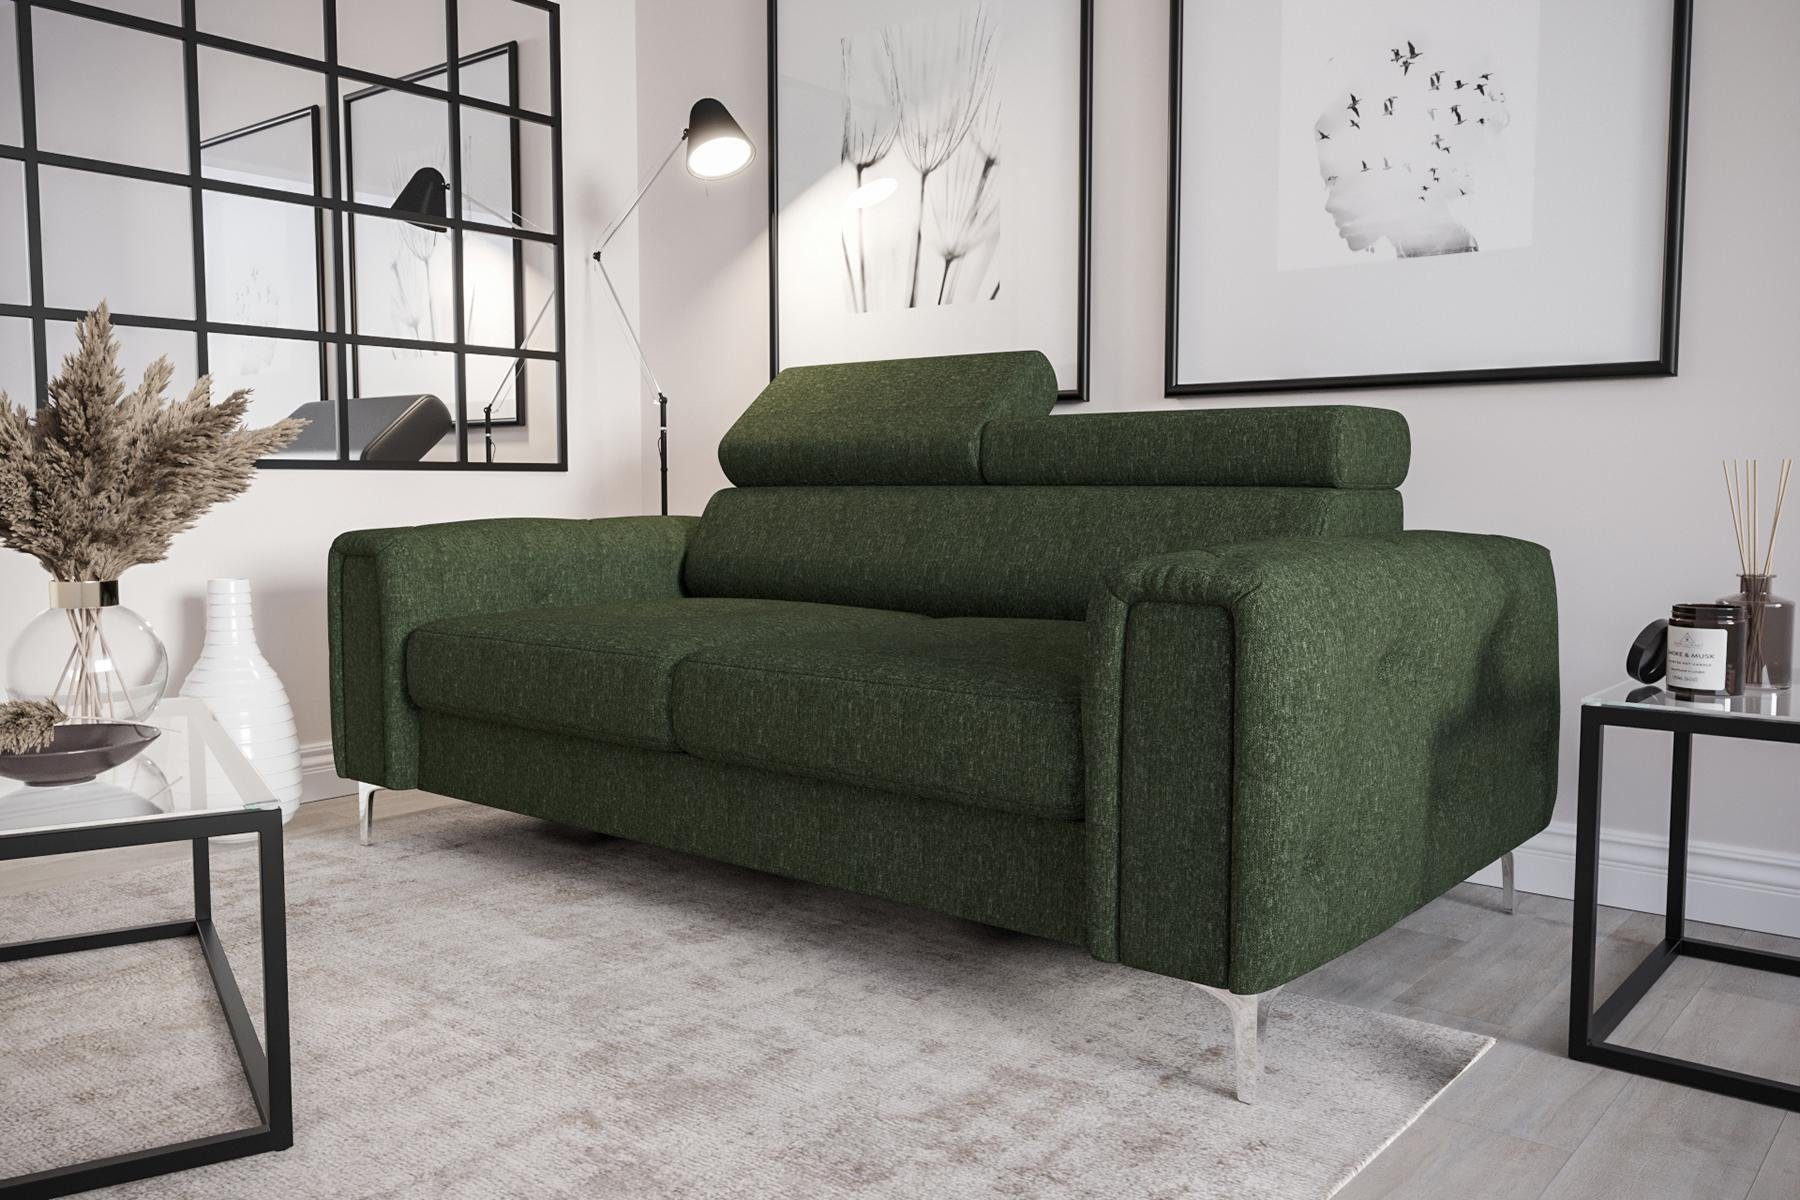 | JVmoebel | Luxus Europe Made Sofa 2-Sitzer Couch Sofa Möbel Grün Polster Grün in Sofa Designer Couchen Sitz, Grün